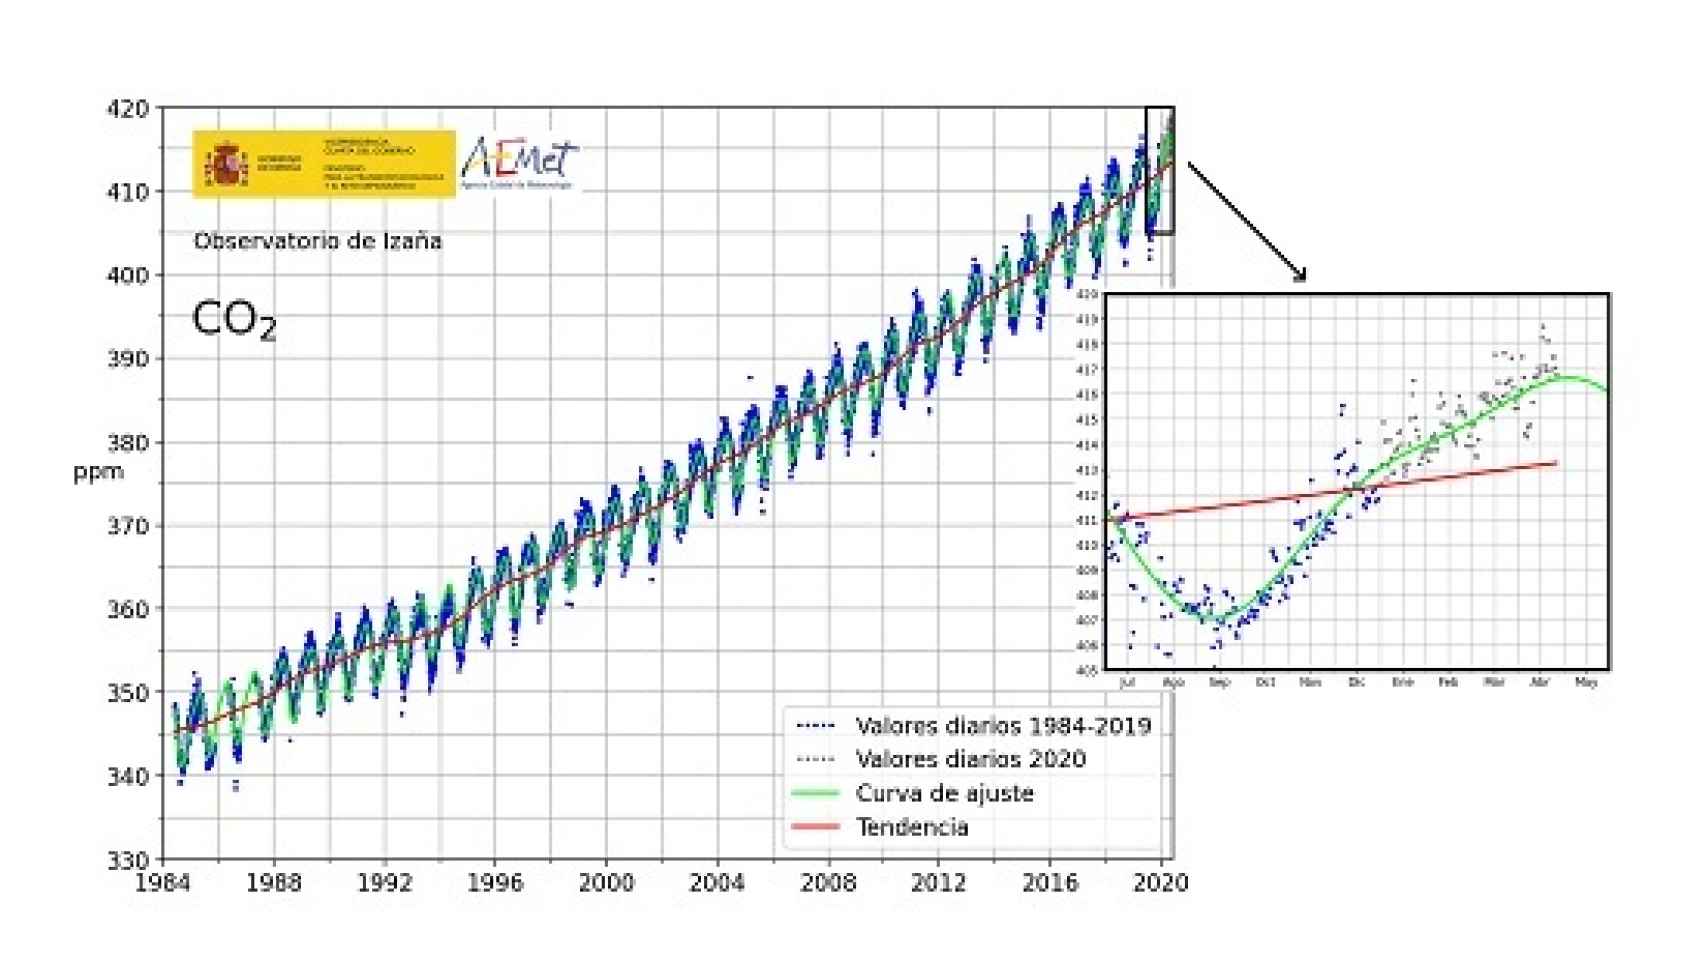 Evolución de la concentración diaria de CO2 en partes por millón (ppm) en Izaña. Centro de Investigación Atmosférica de Izaña desde 1984 con detalle ampliado desde 2018